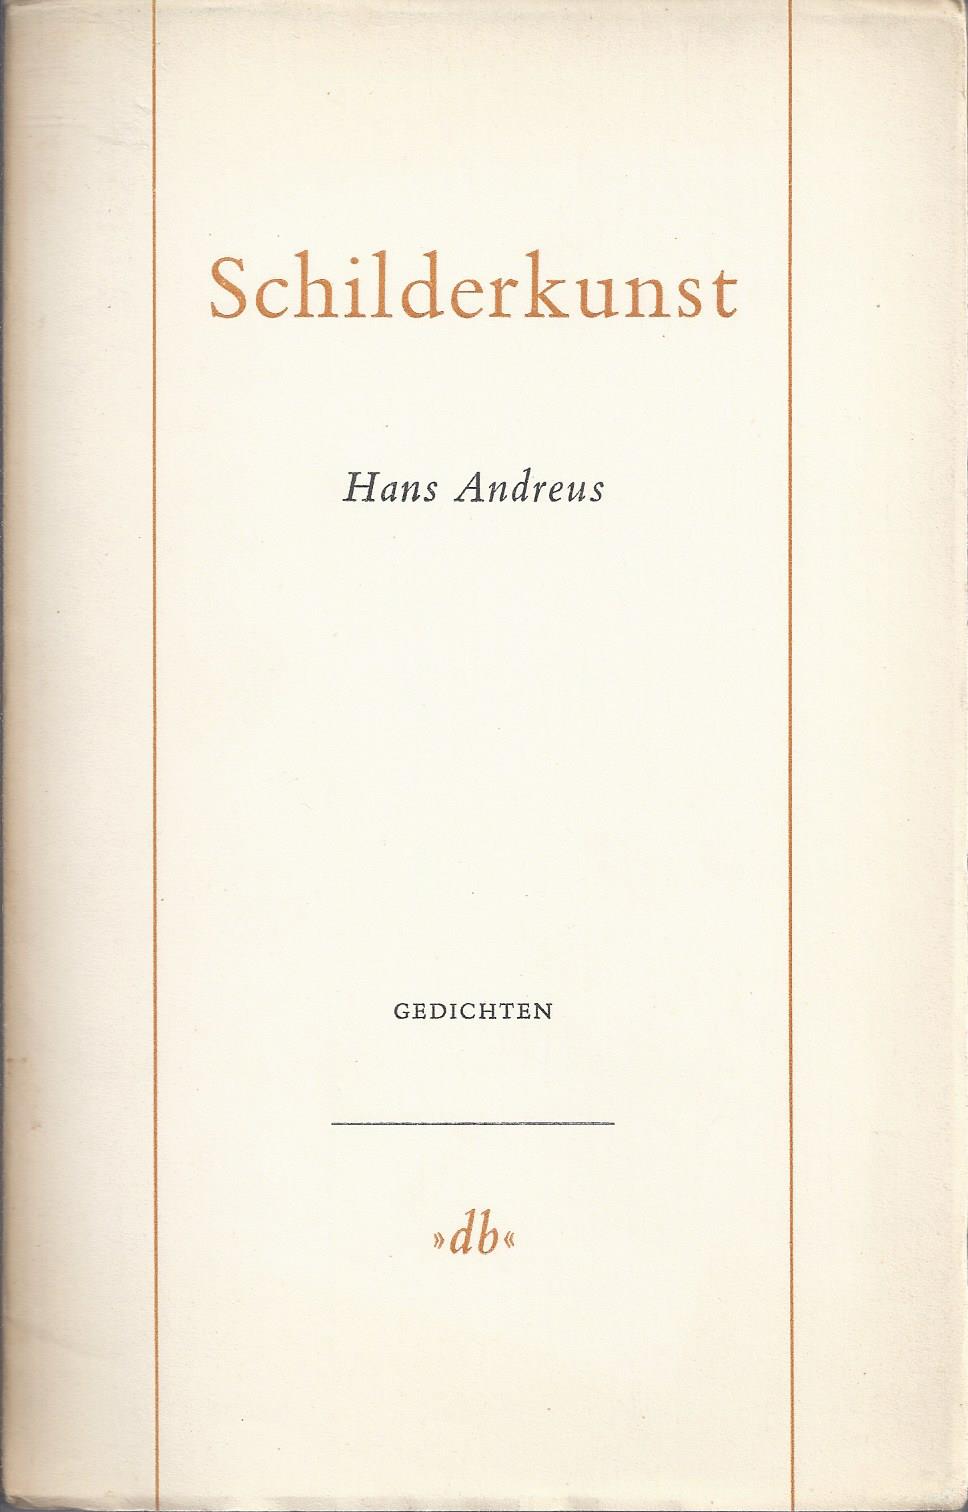 ANDREUS, HANS (1926-1977) - Schilderkunst